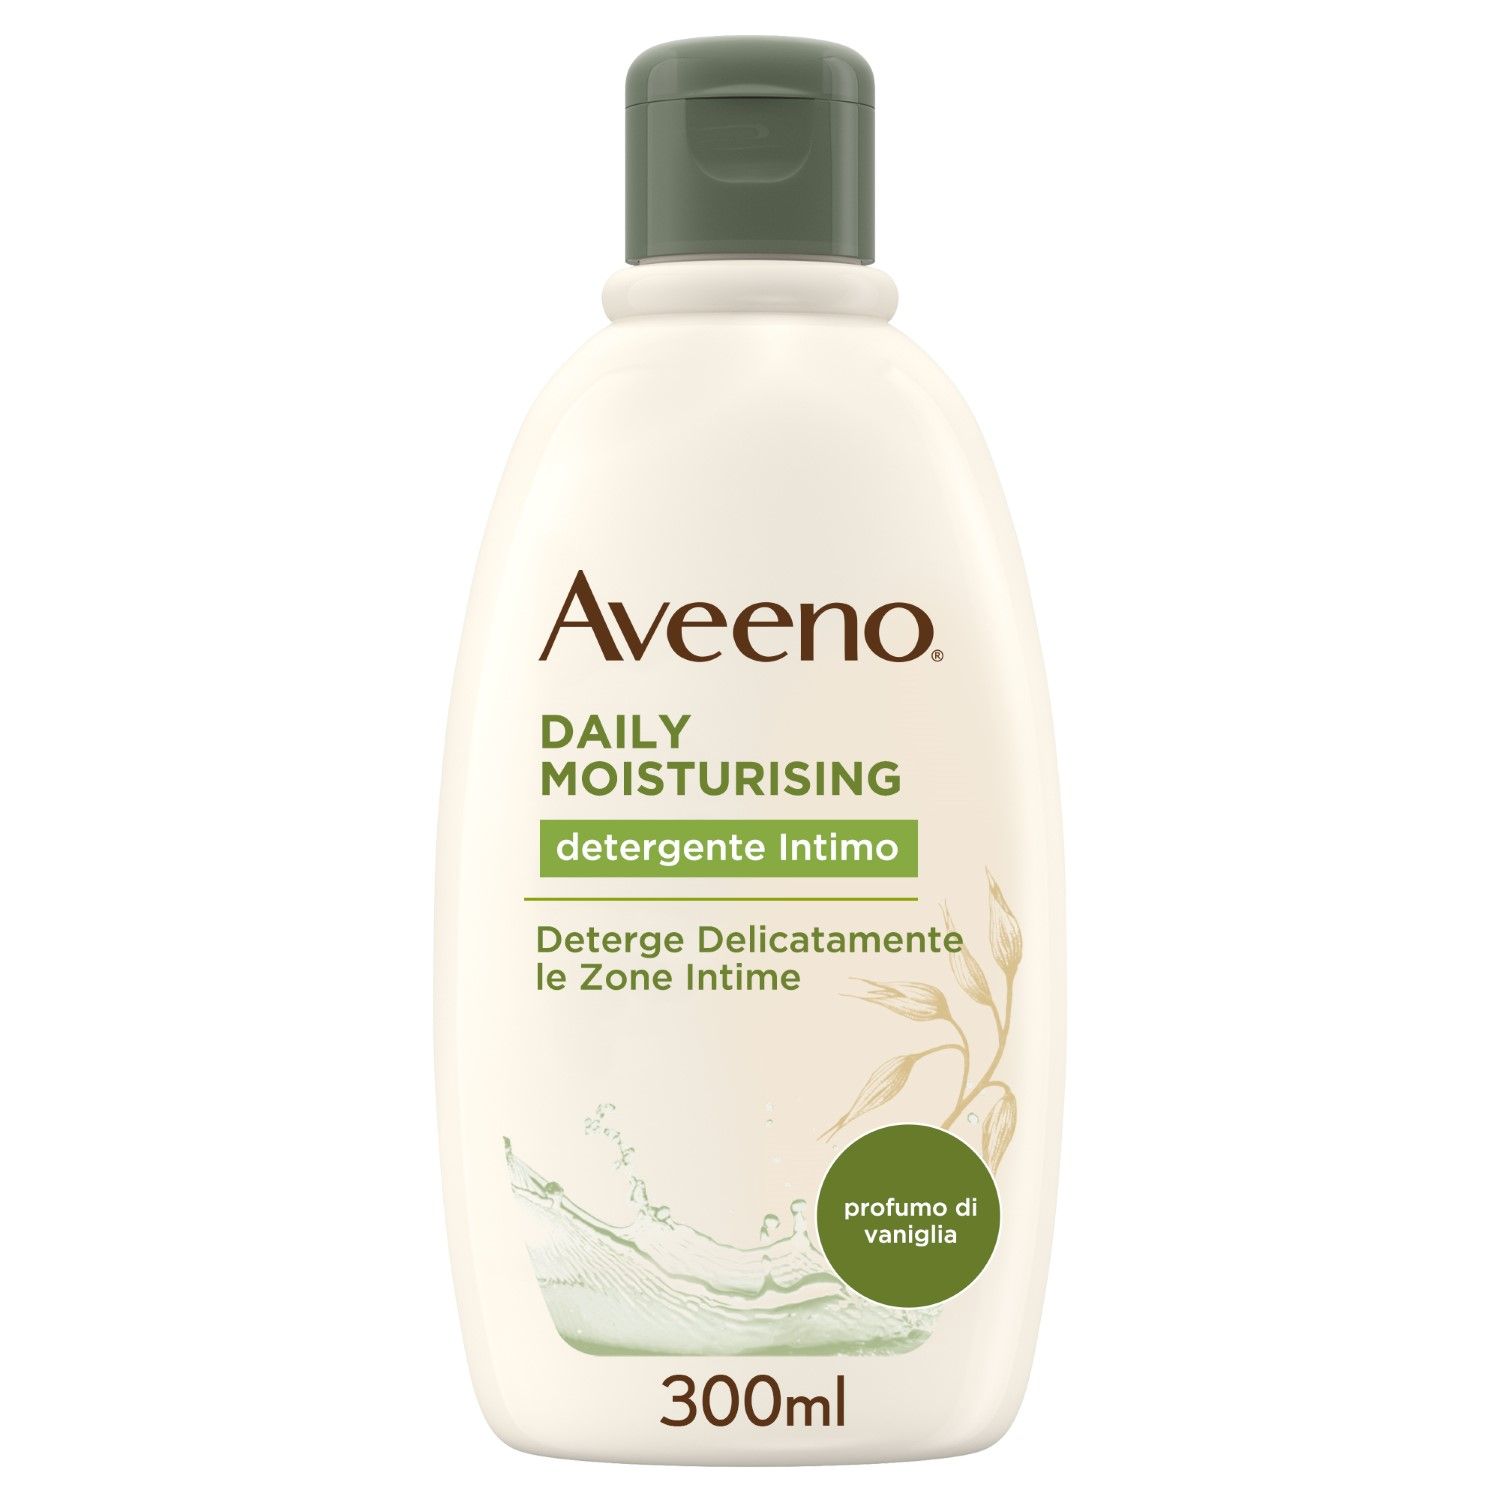 Aveeno Daily Moisturizing Detergente Intimo 300ml